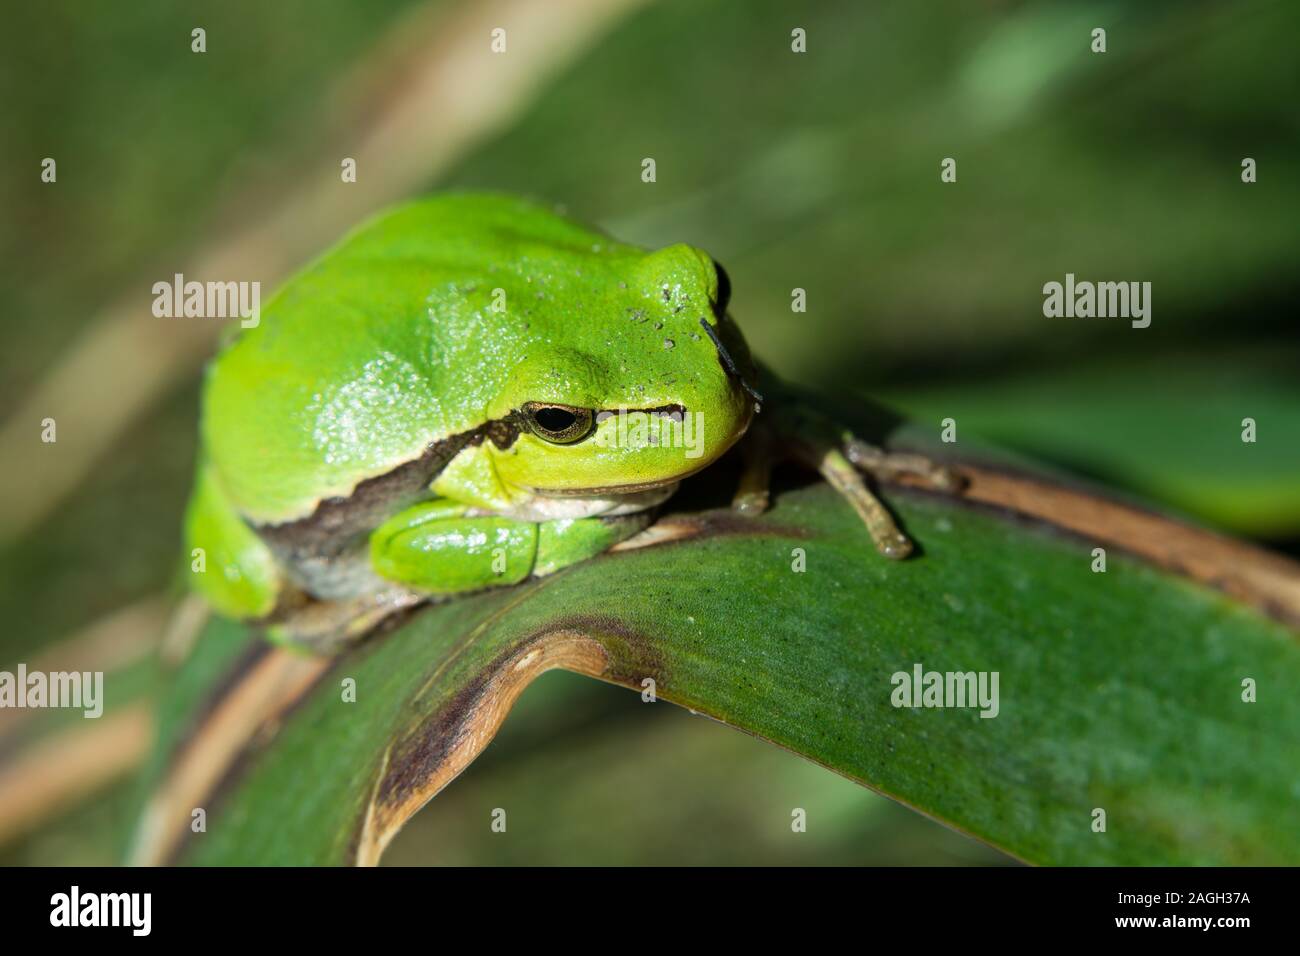 Bella Unión Tree Frog sentada sobre una hoja - closeup Foto de stock